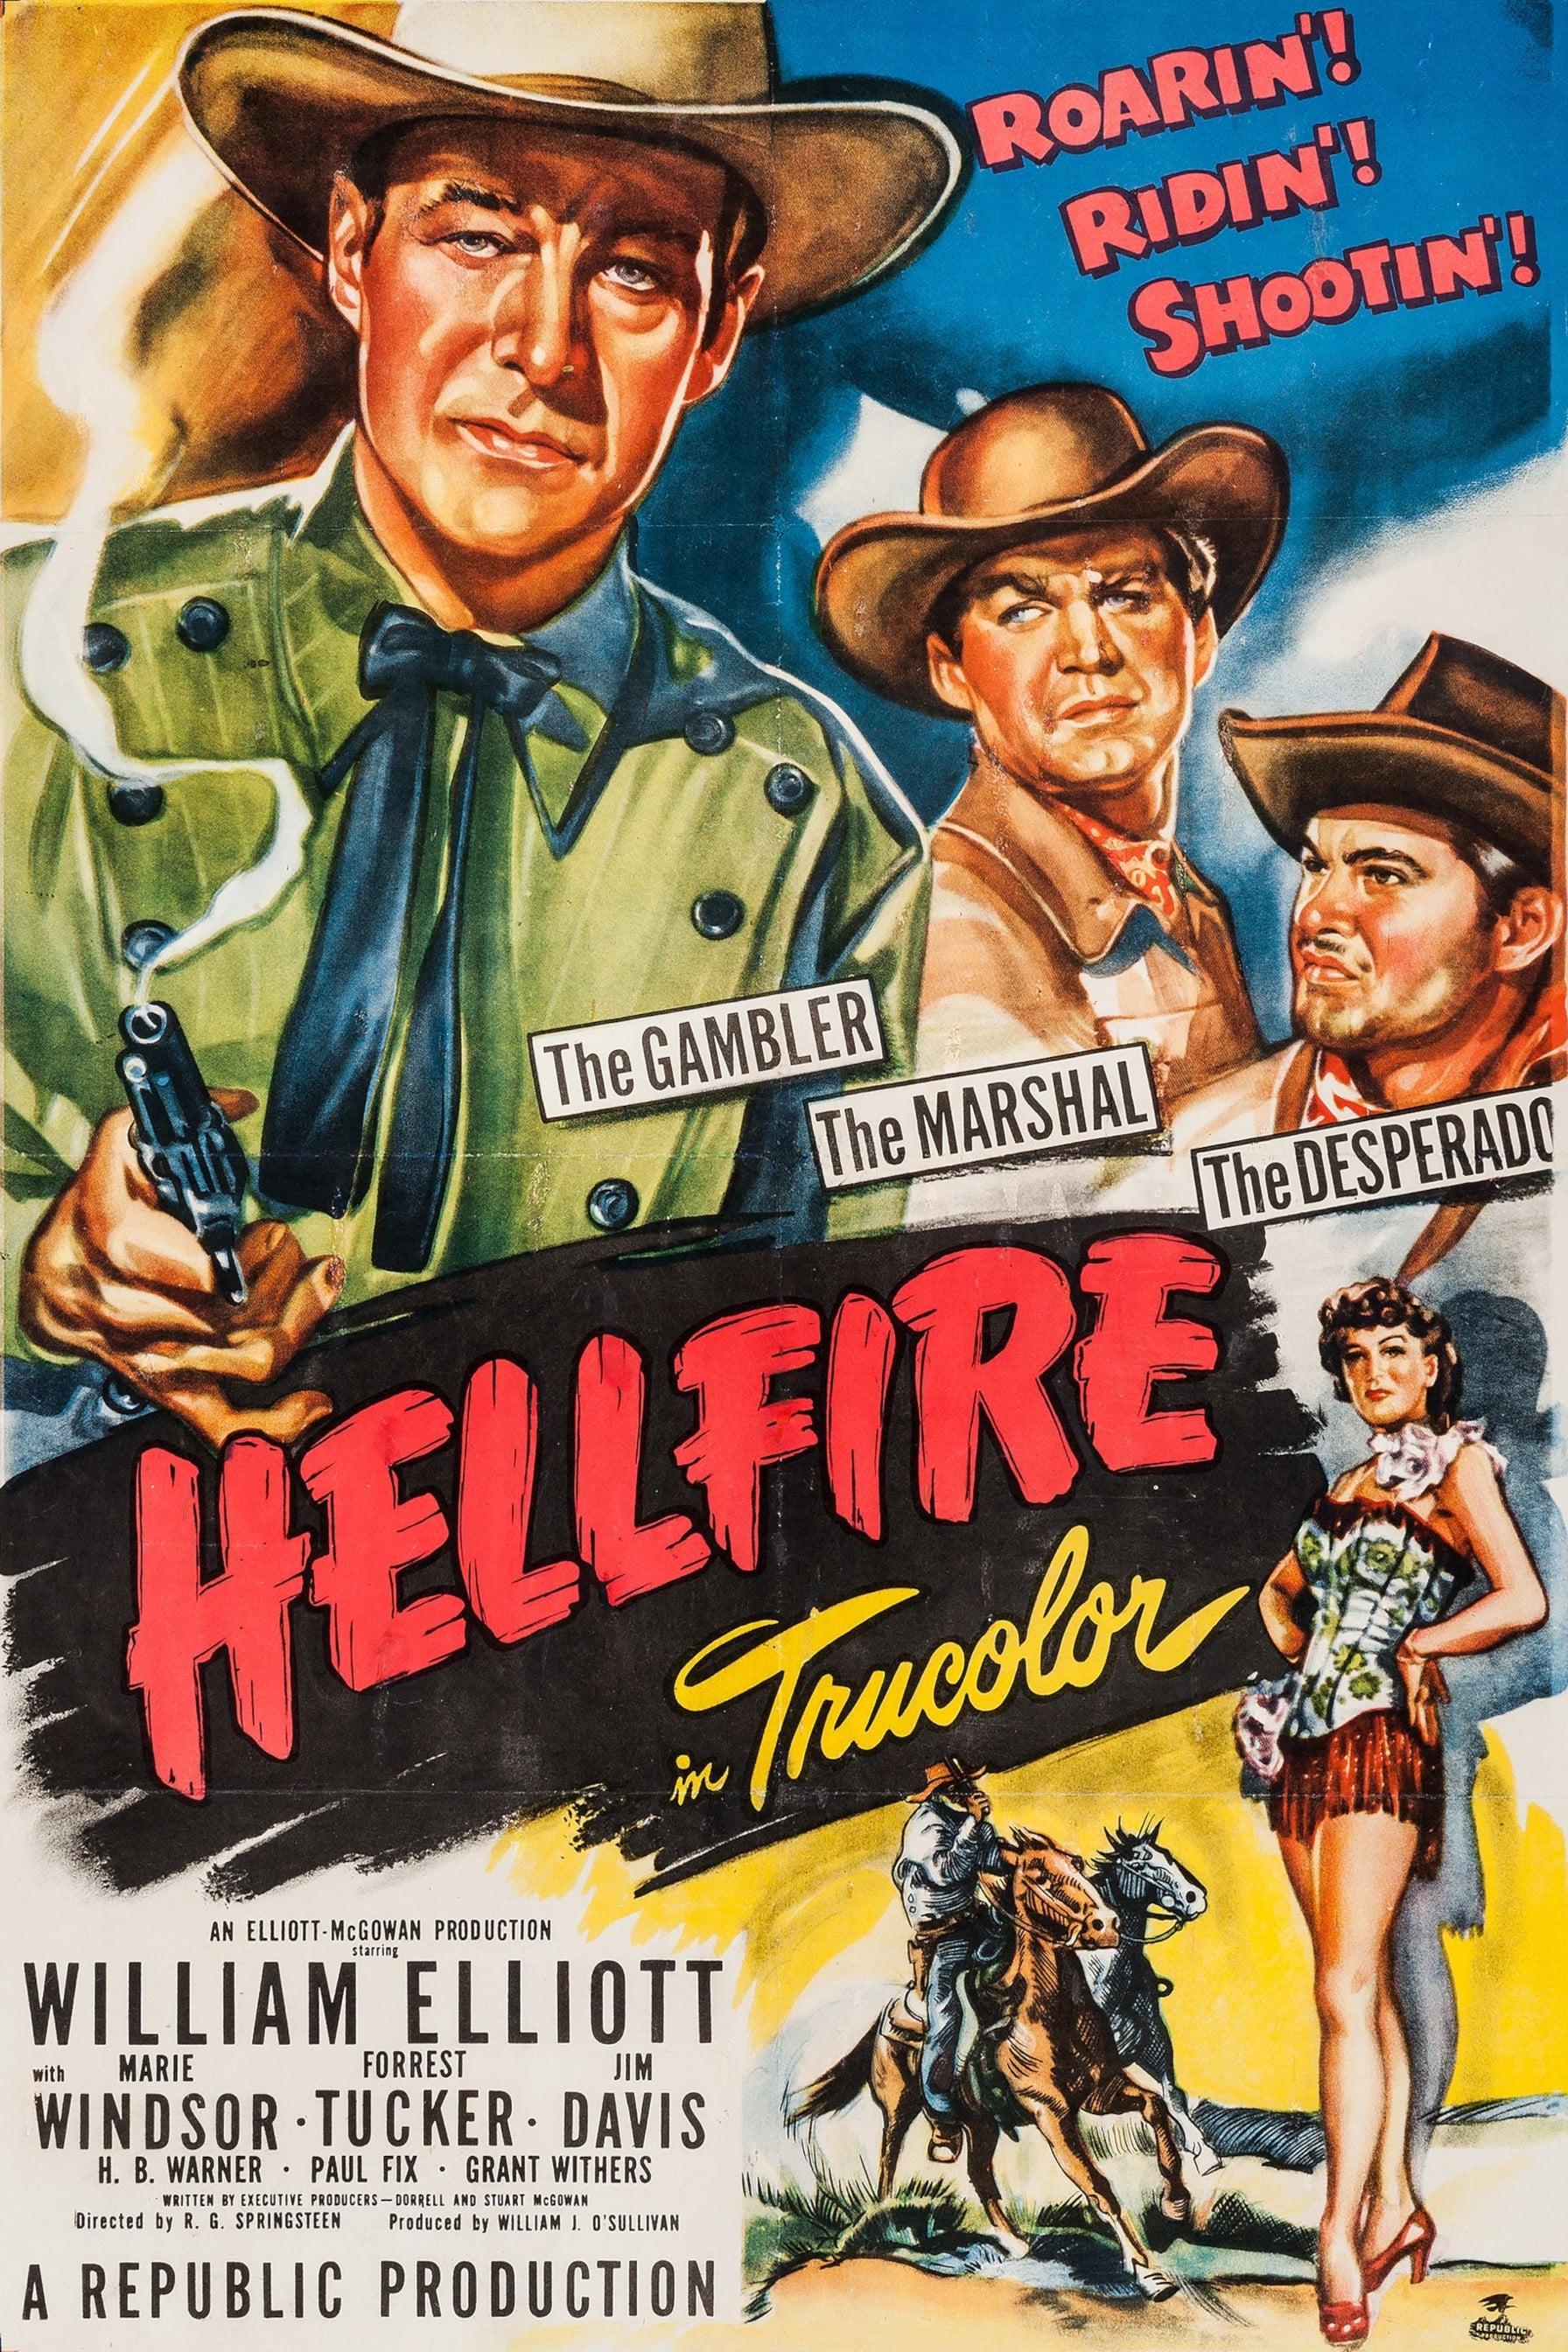 Hellfire poster